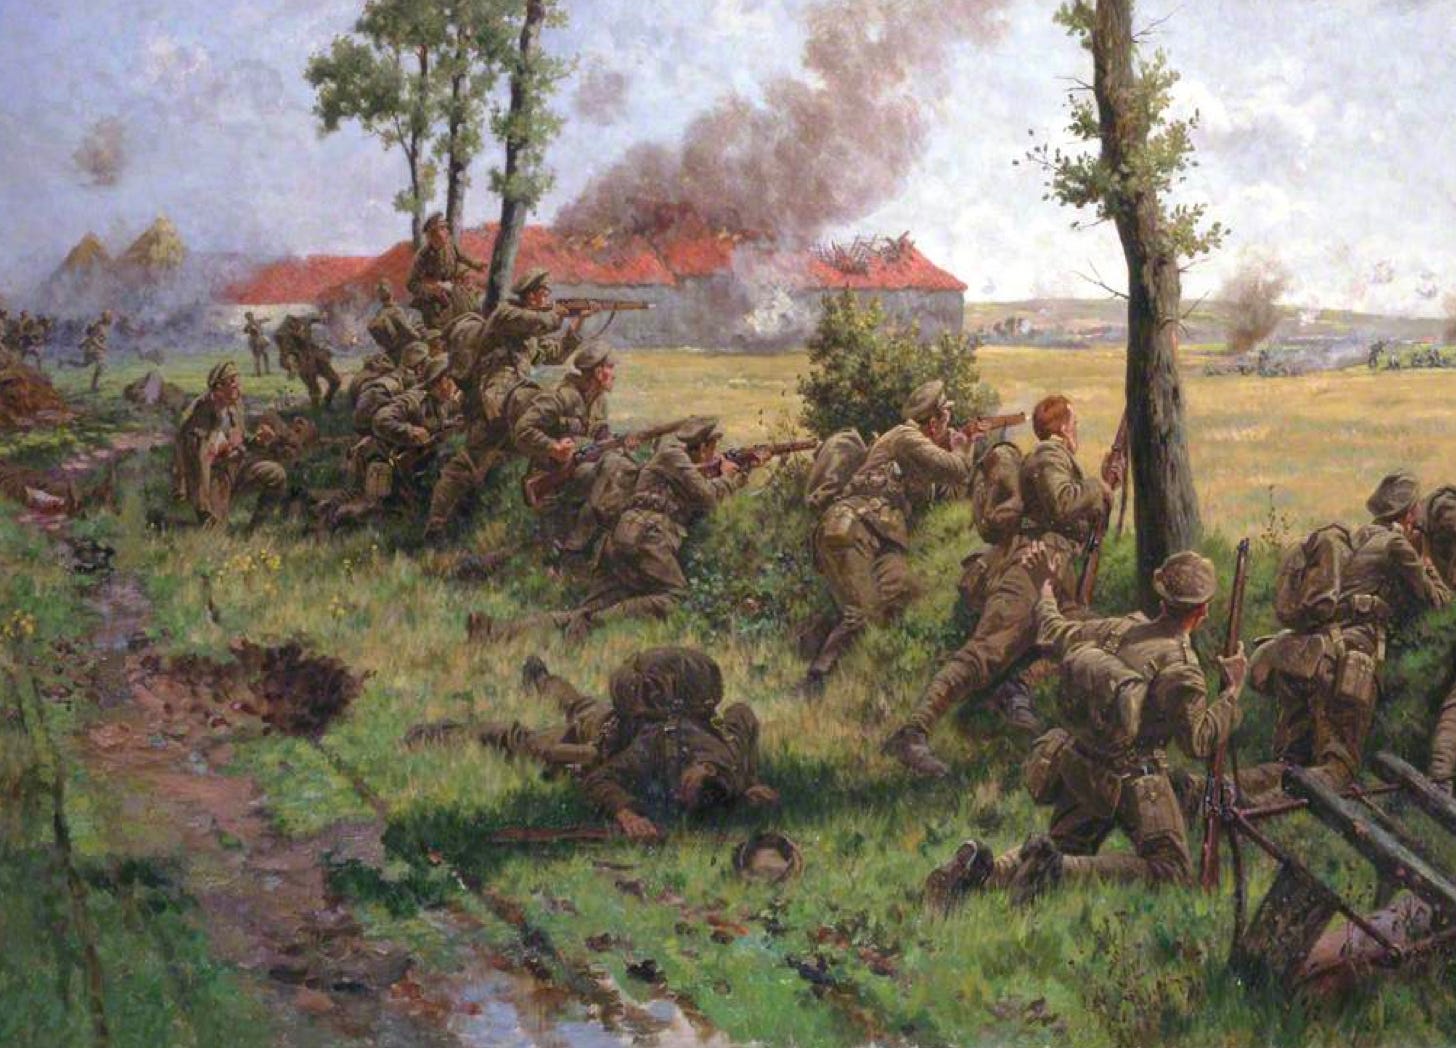 The Battalion in War - by Bruce Ivar Gudmundsson